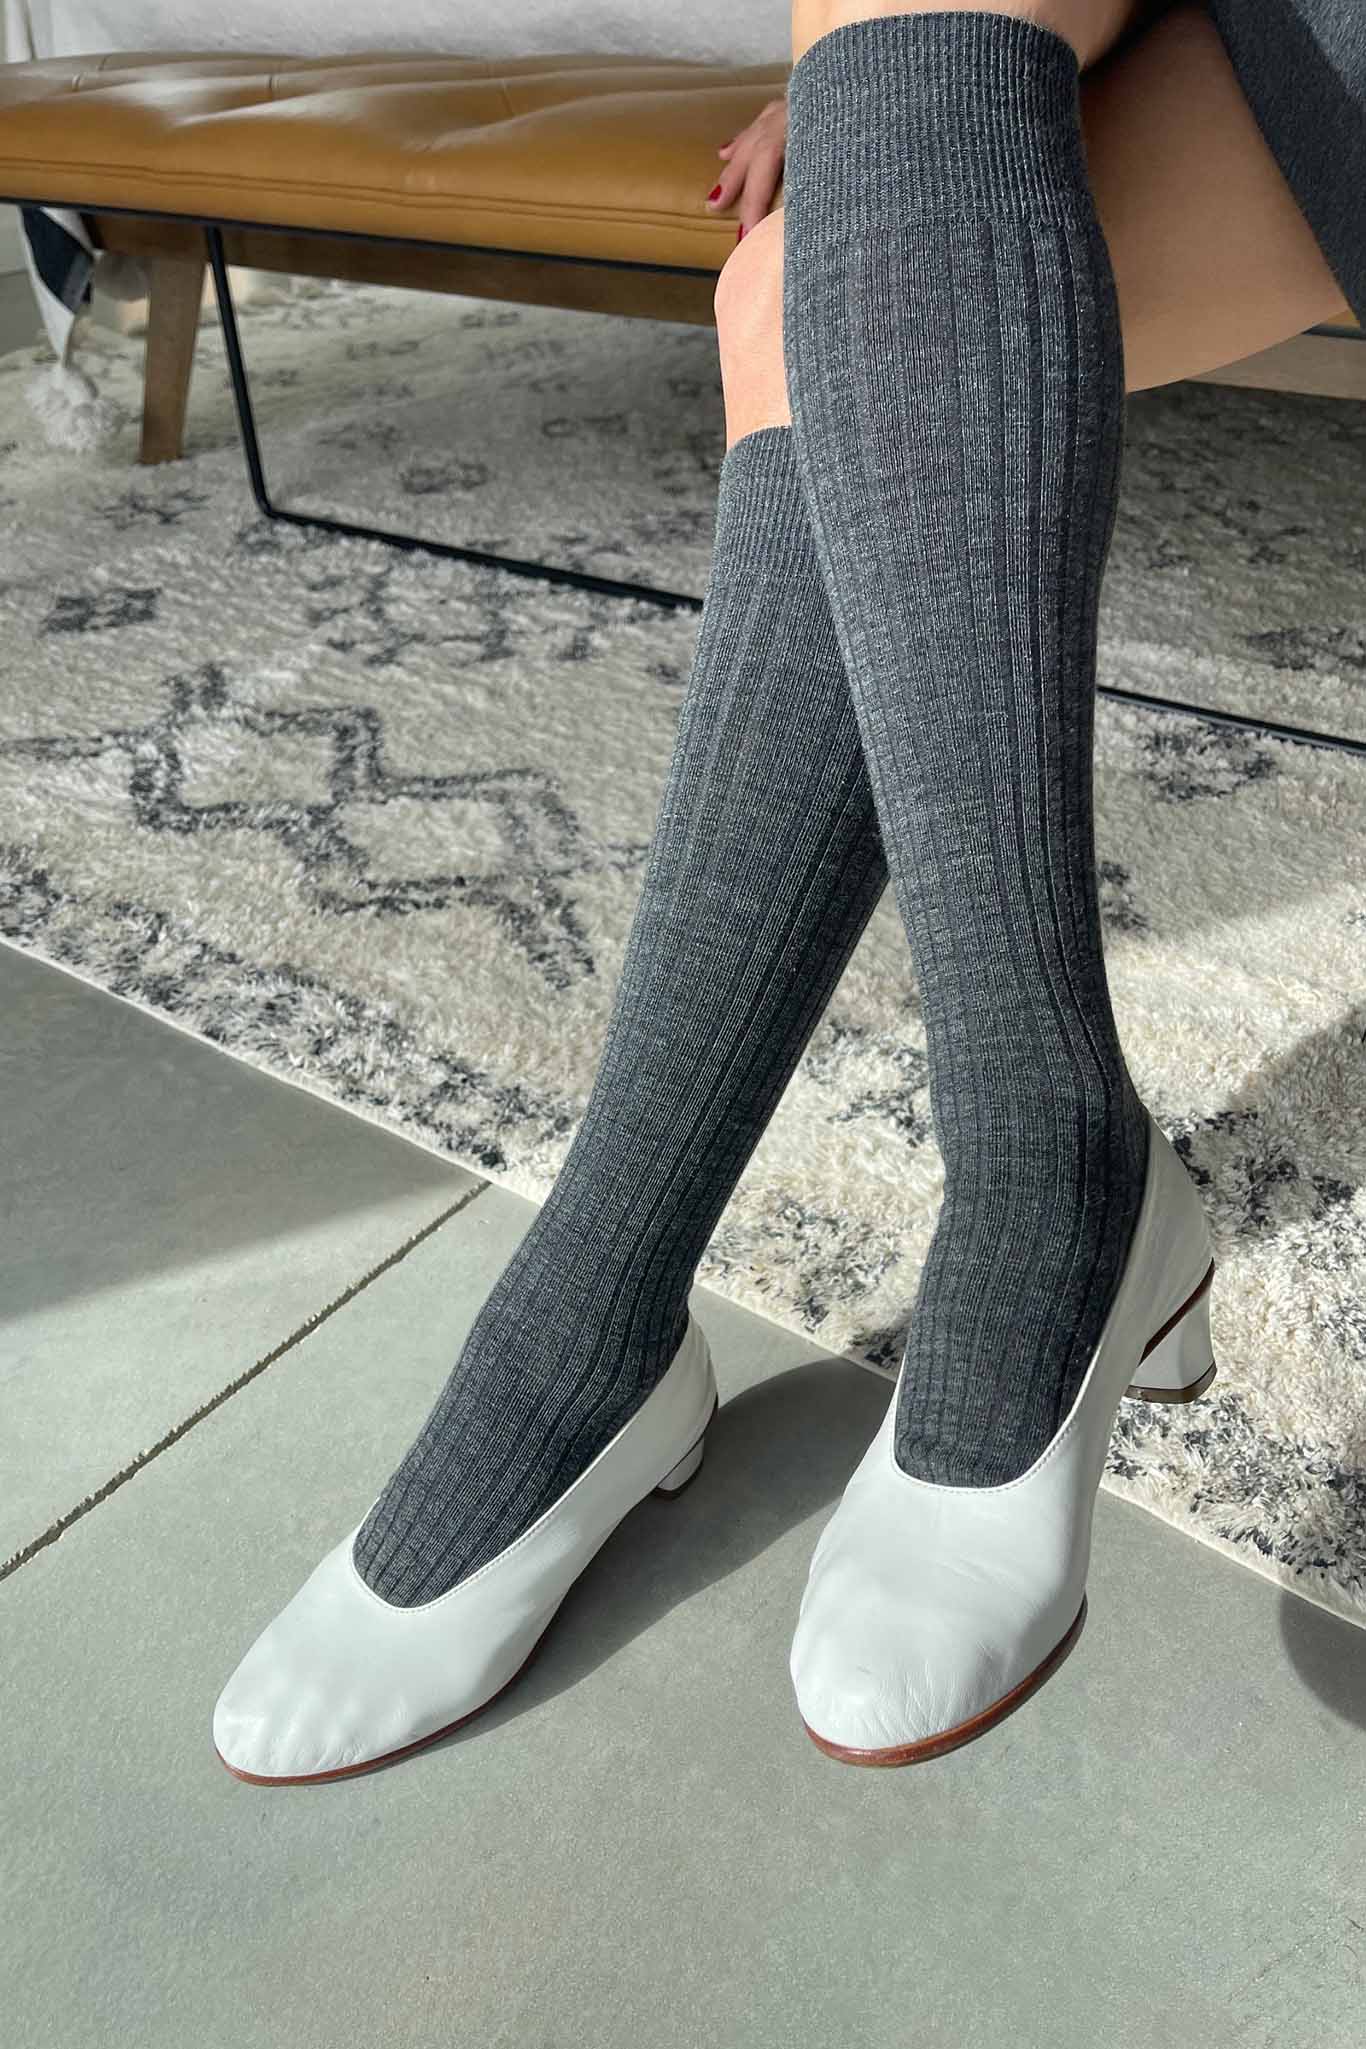 Le Bon Shoppe Schoolgirl Socks - Charcoal